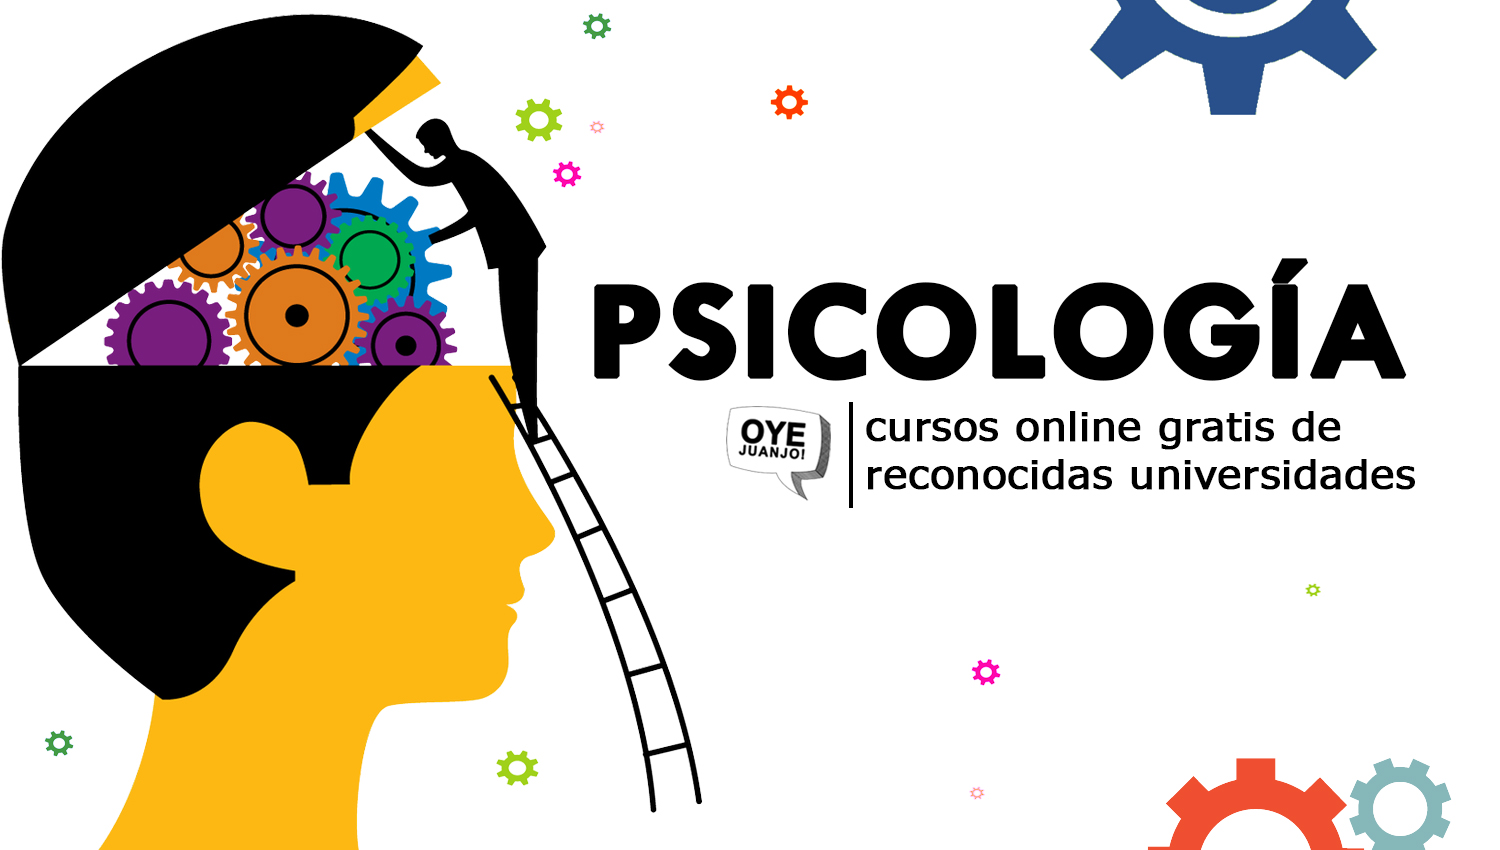 Psicología: 10 cursos online gratis de universidades